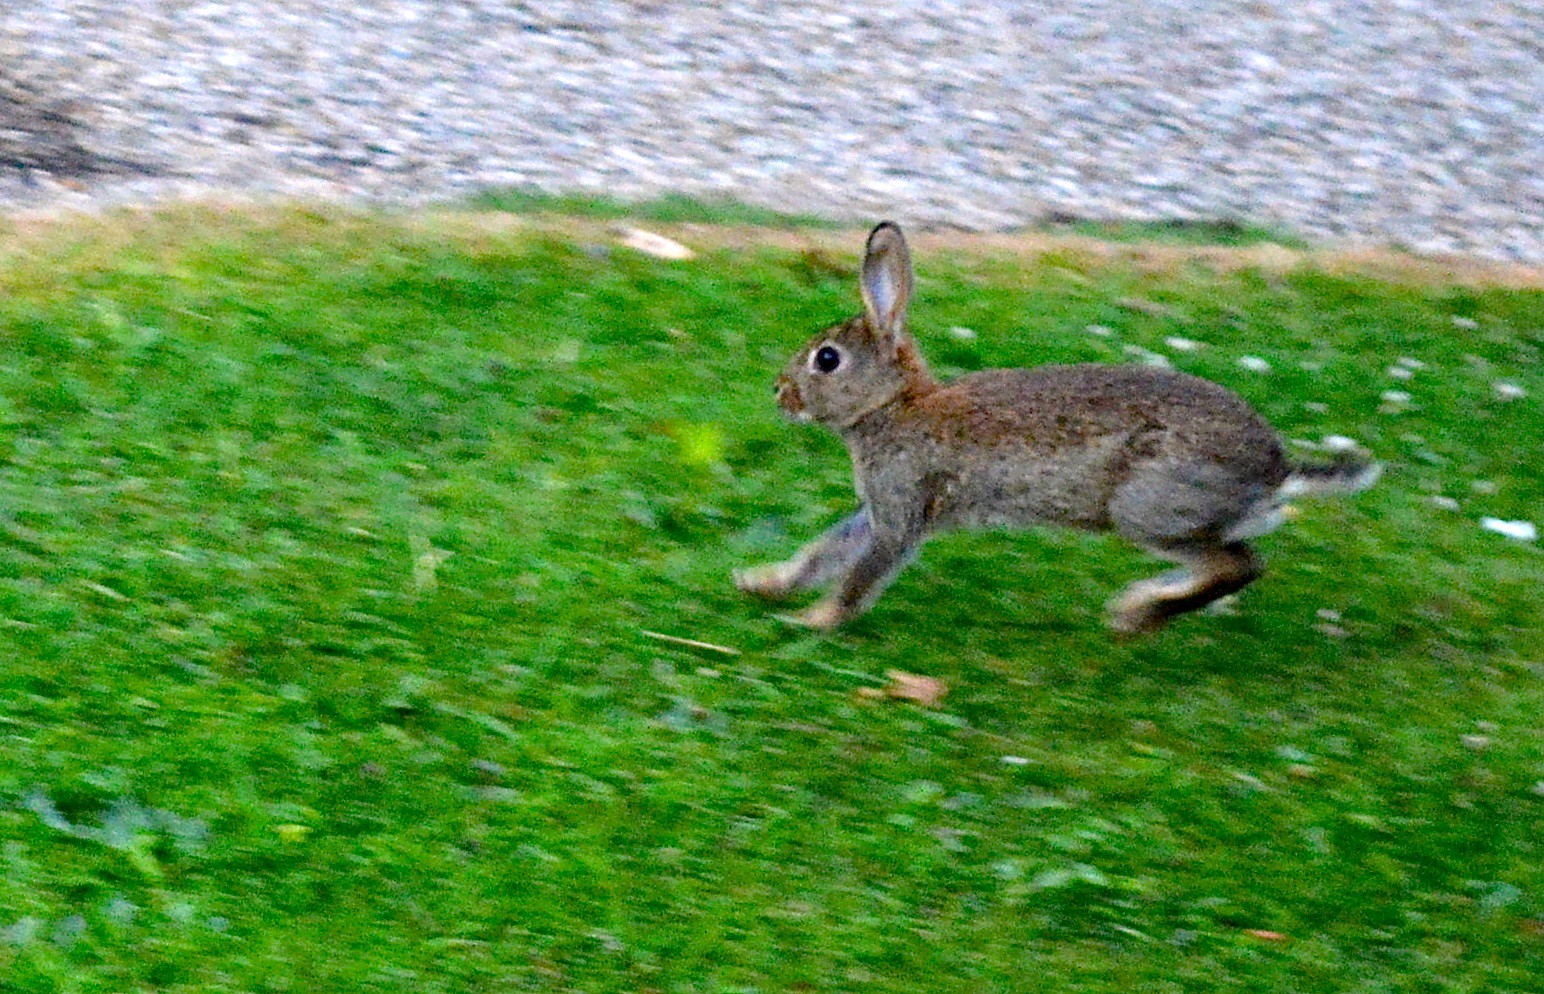 Rabbit Vs Bunny